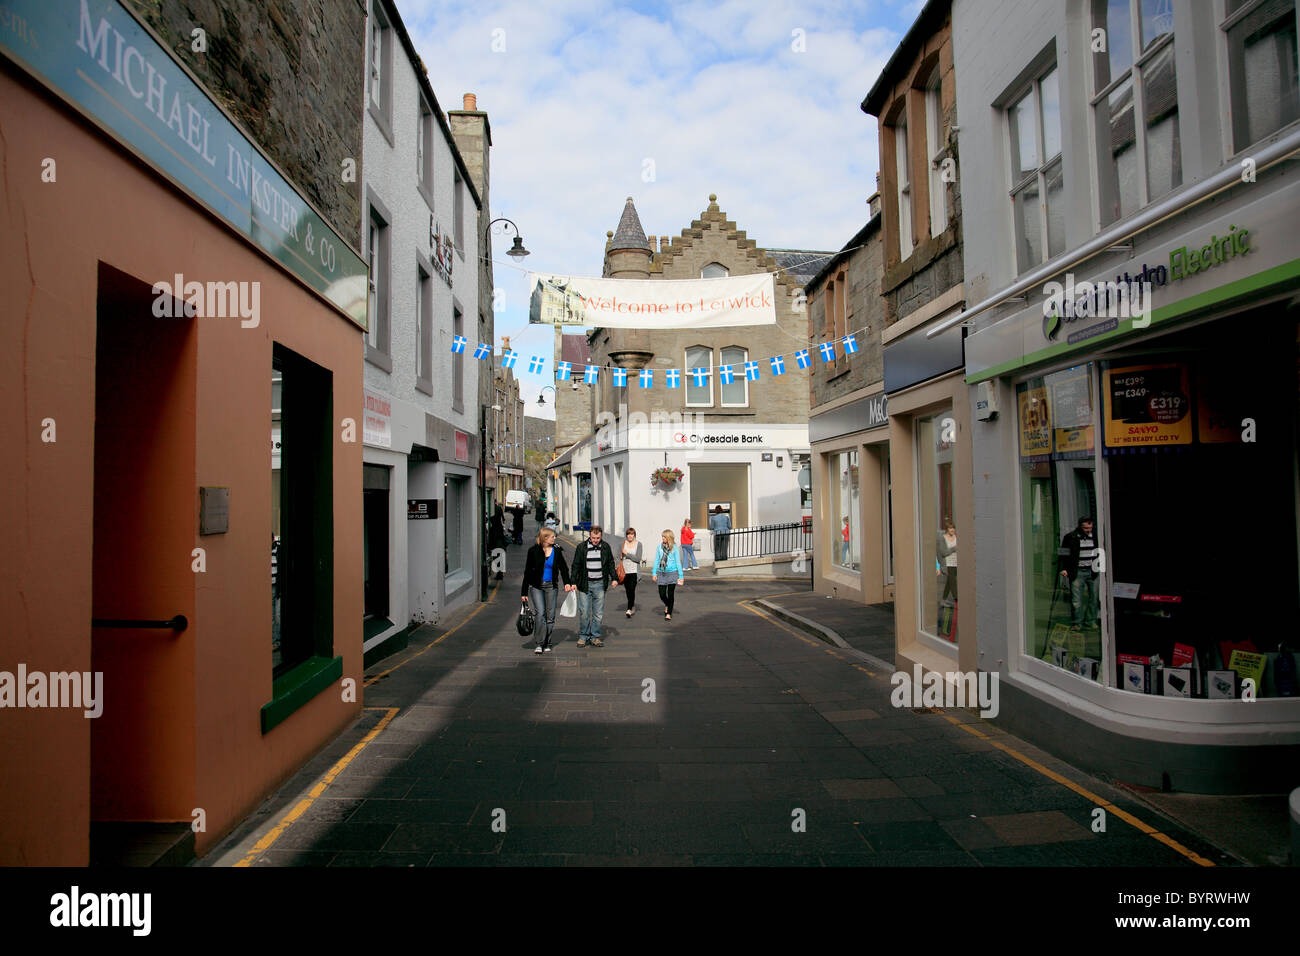 Commercial Street, la strada principale dello shopping a Lerwick, Isole Shetland. Le automobili hanno bisogno di guidare lentamente e con cautela Foto Stock